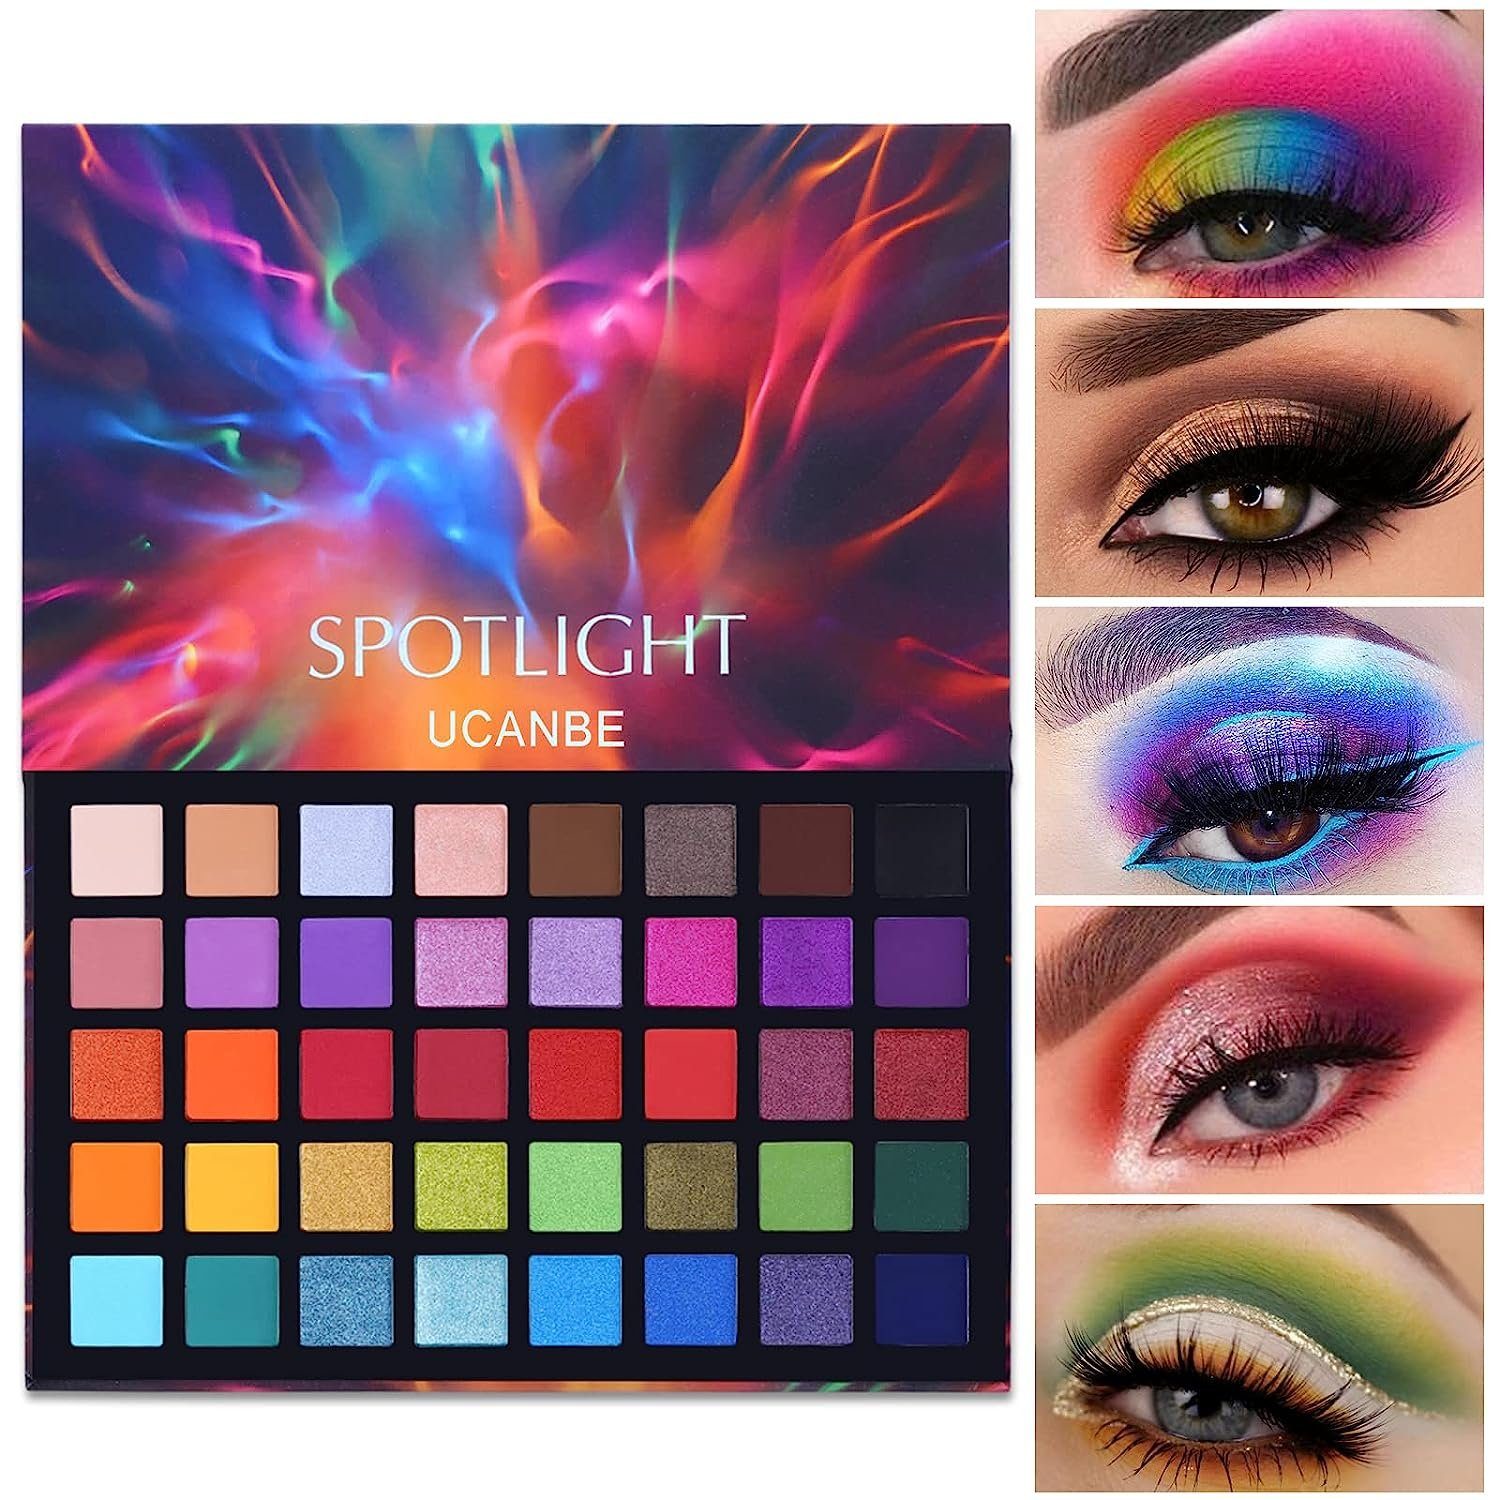 Haiaveng Lidschatten-Palette Spotlight Lidschatten Palette mit 40 Farben, Eyeshadow Palette Matt und Schimmernde